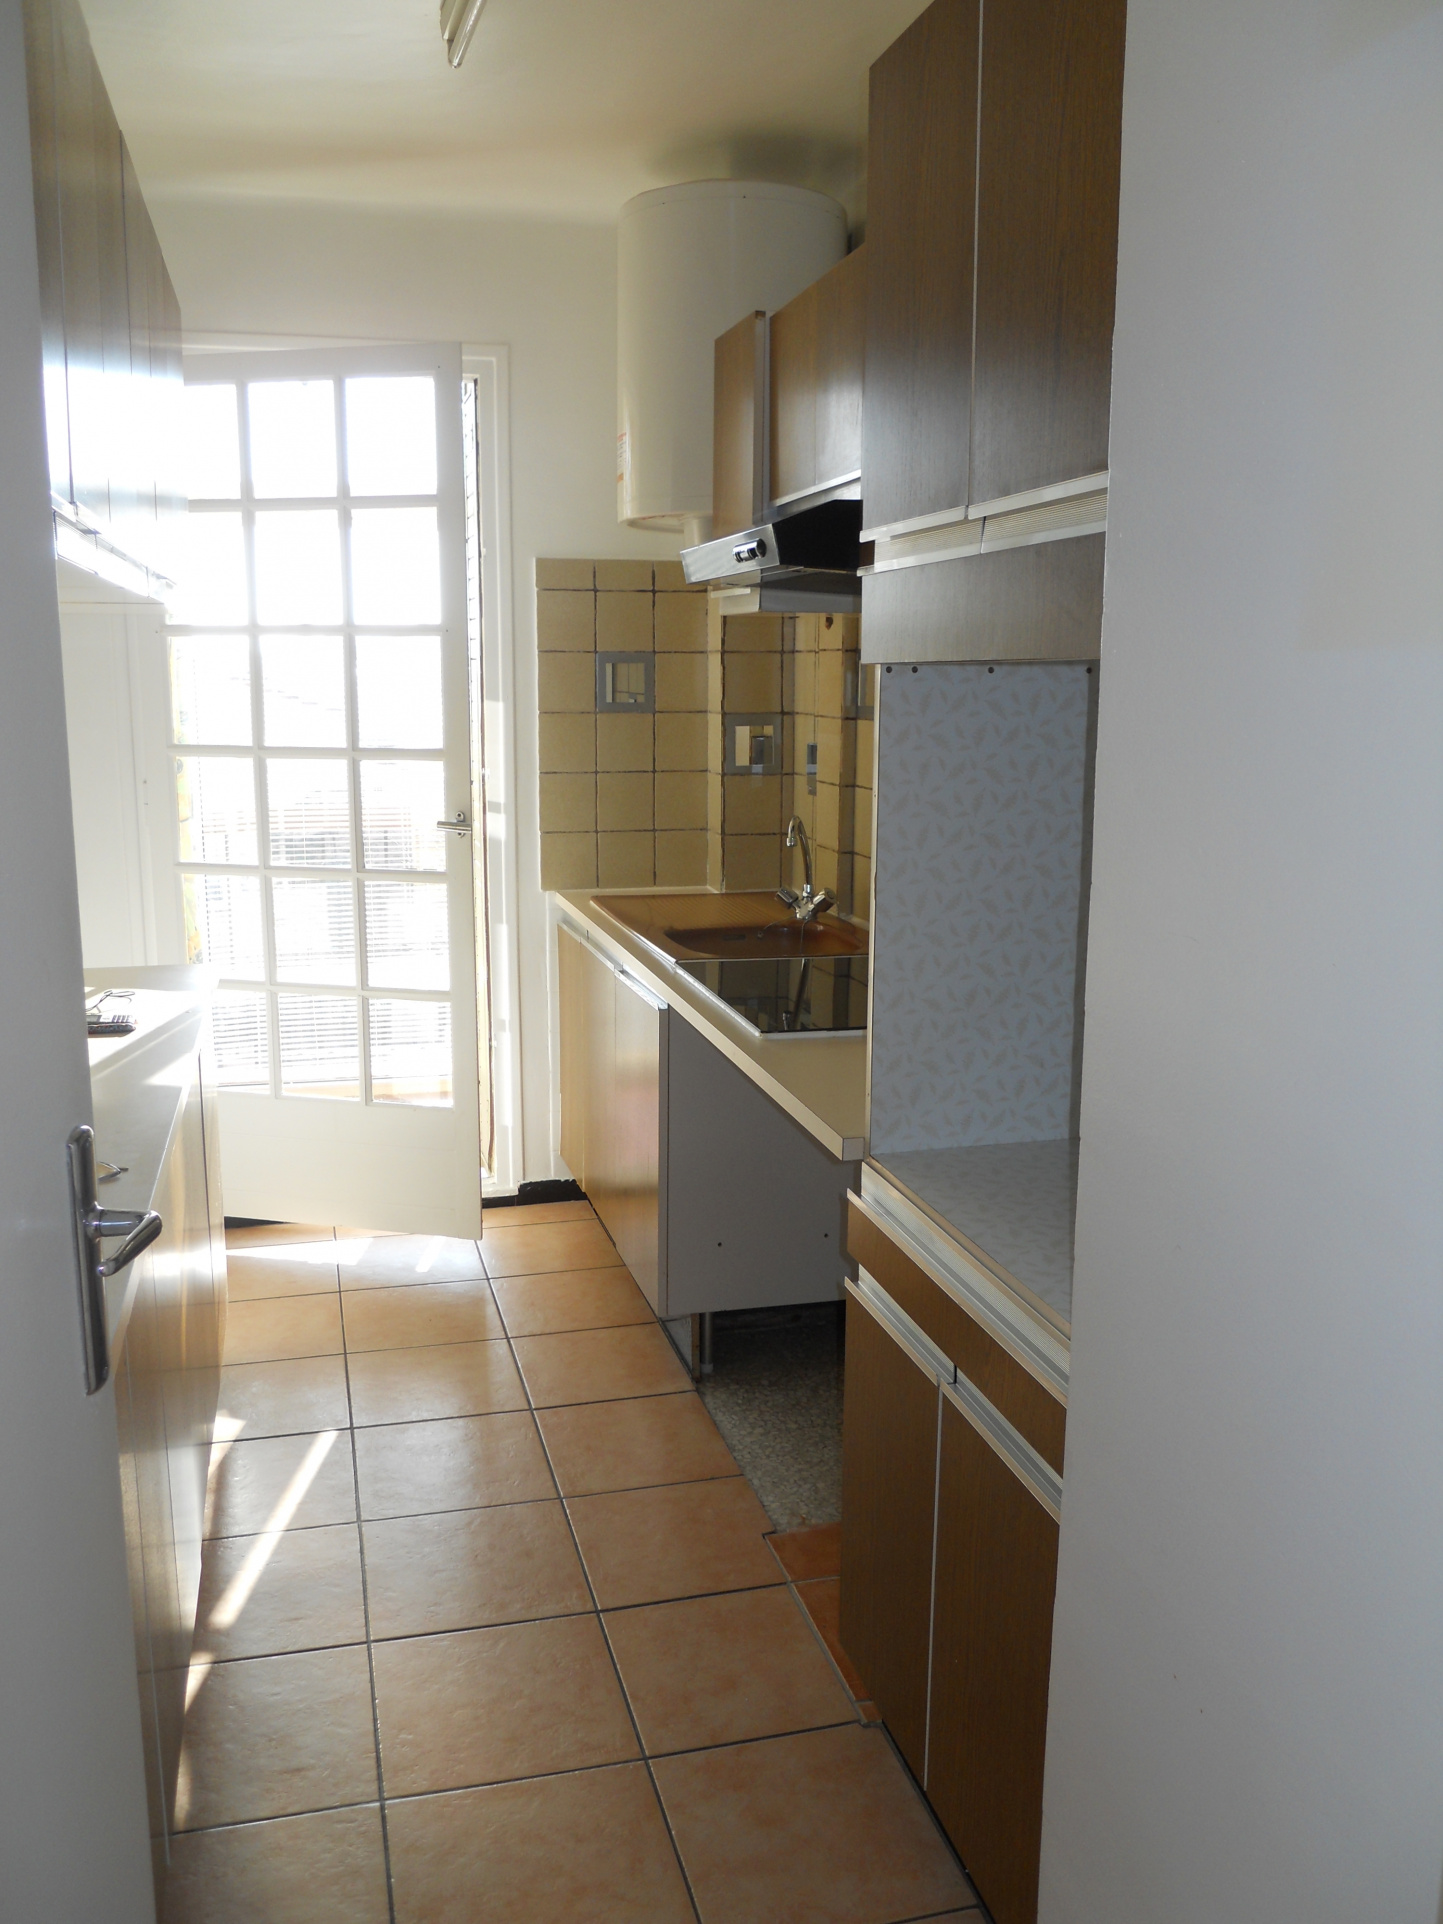 À vendre appartement de 52m2 à argelès-sur-mer (66700) - Photo 8'